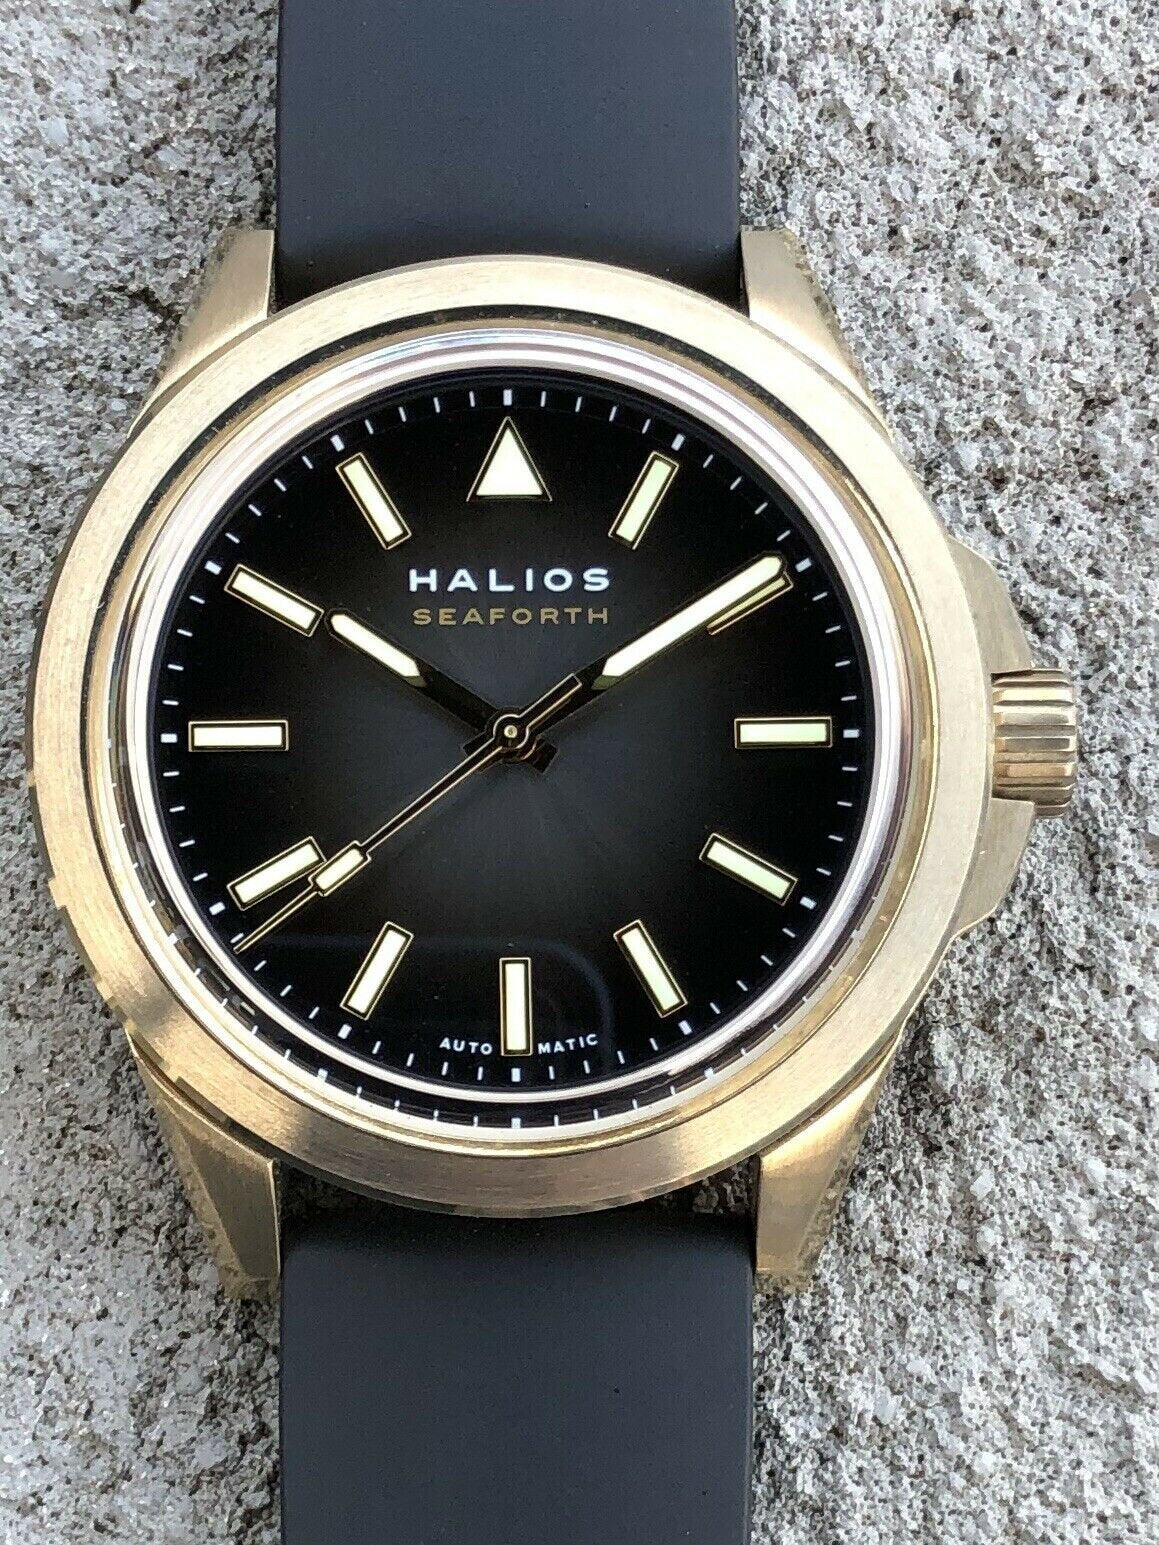 Halios_Seaforth_Bronze_Grey_Fume_Dial_-_2019_Watch_Vault_01_08240064-151c-4f62-9ac7-4f52ebf721a7.jpg